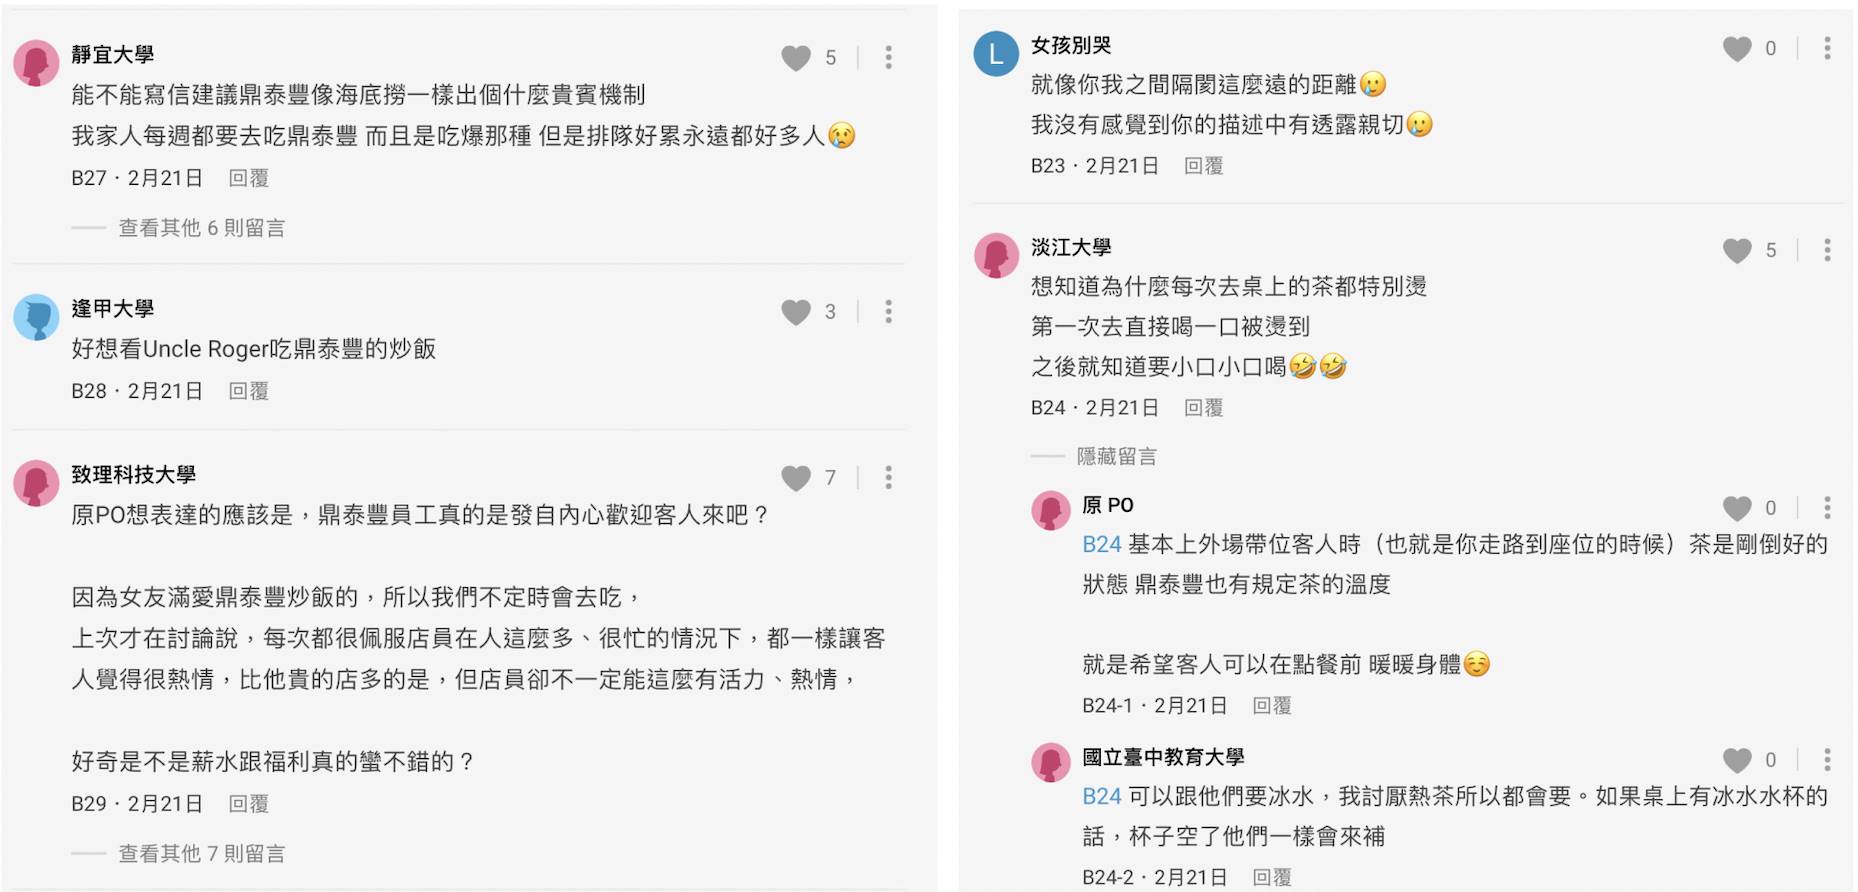 網友對鼎泰豐服務評論